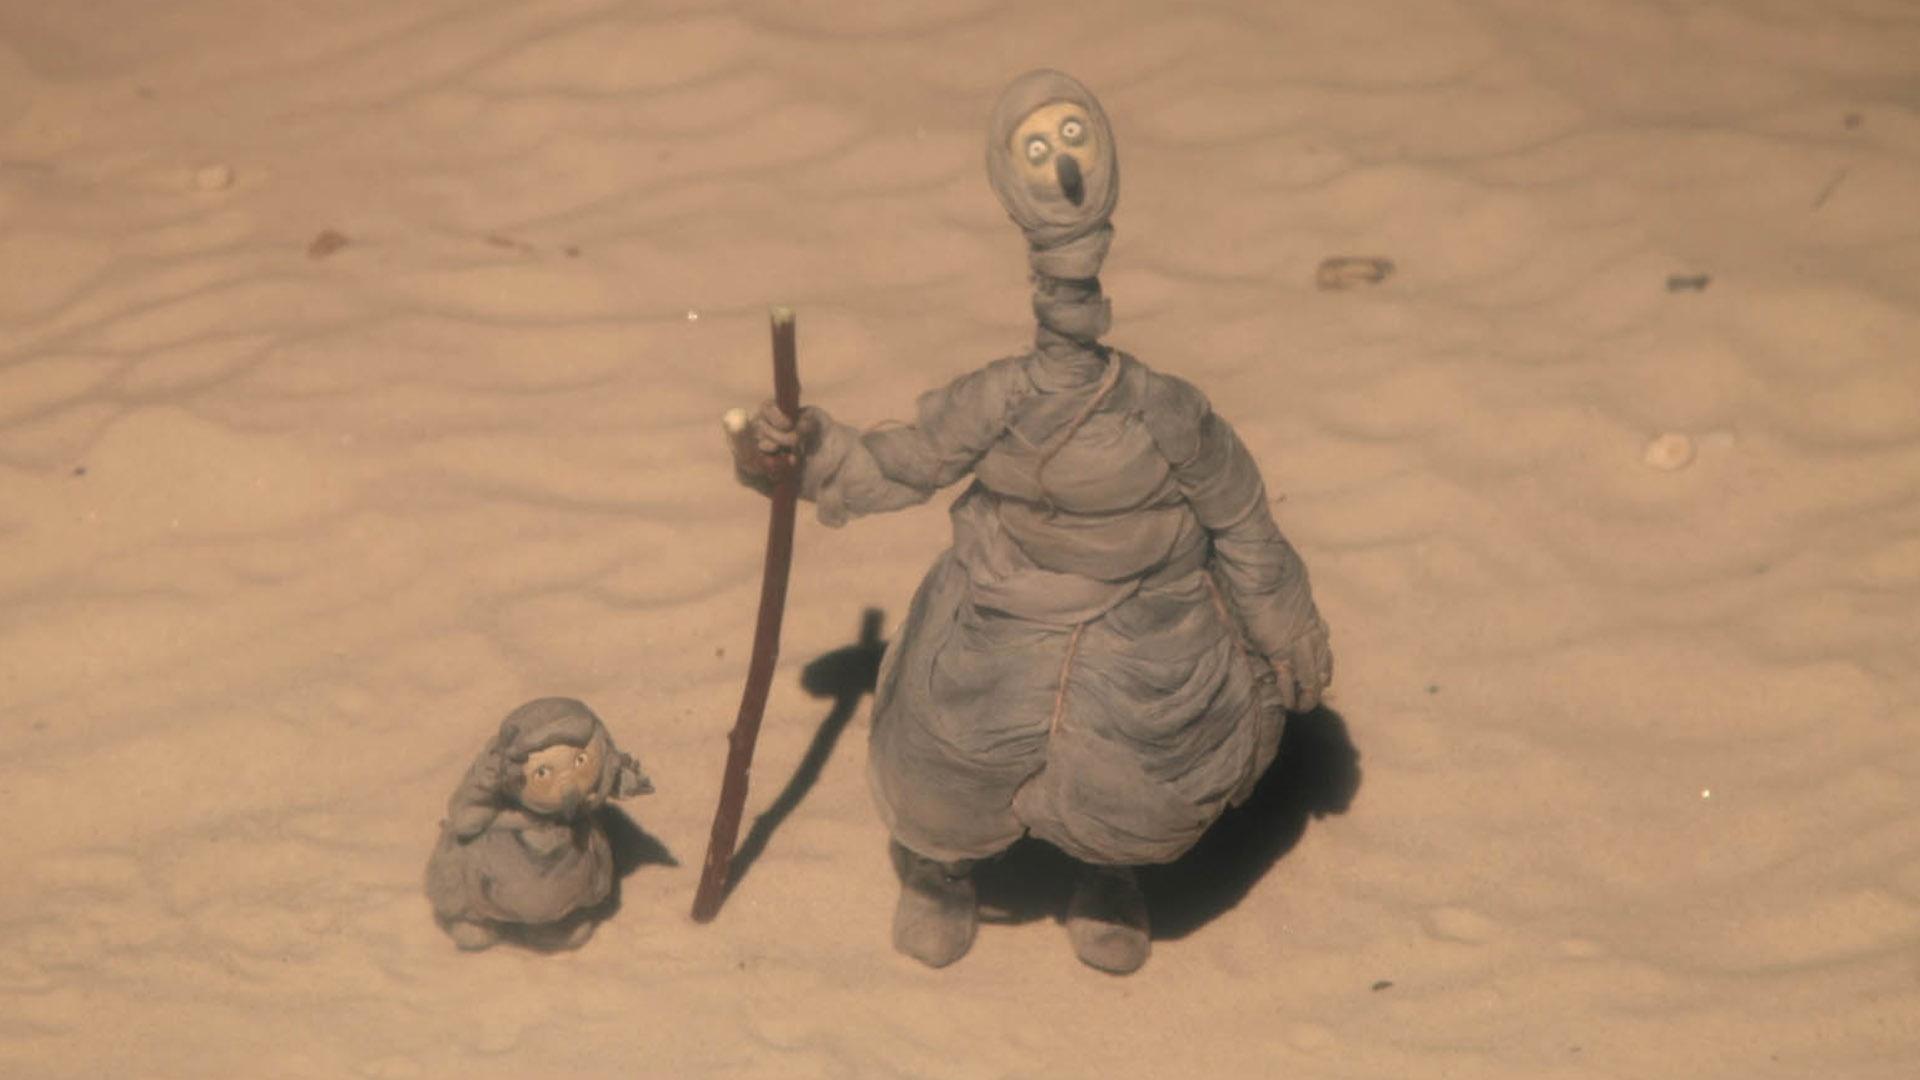 مادری به همراه فرزند کوچکش در انیمیشن Kukuschka در بیابان ایستادند